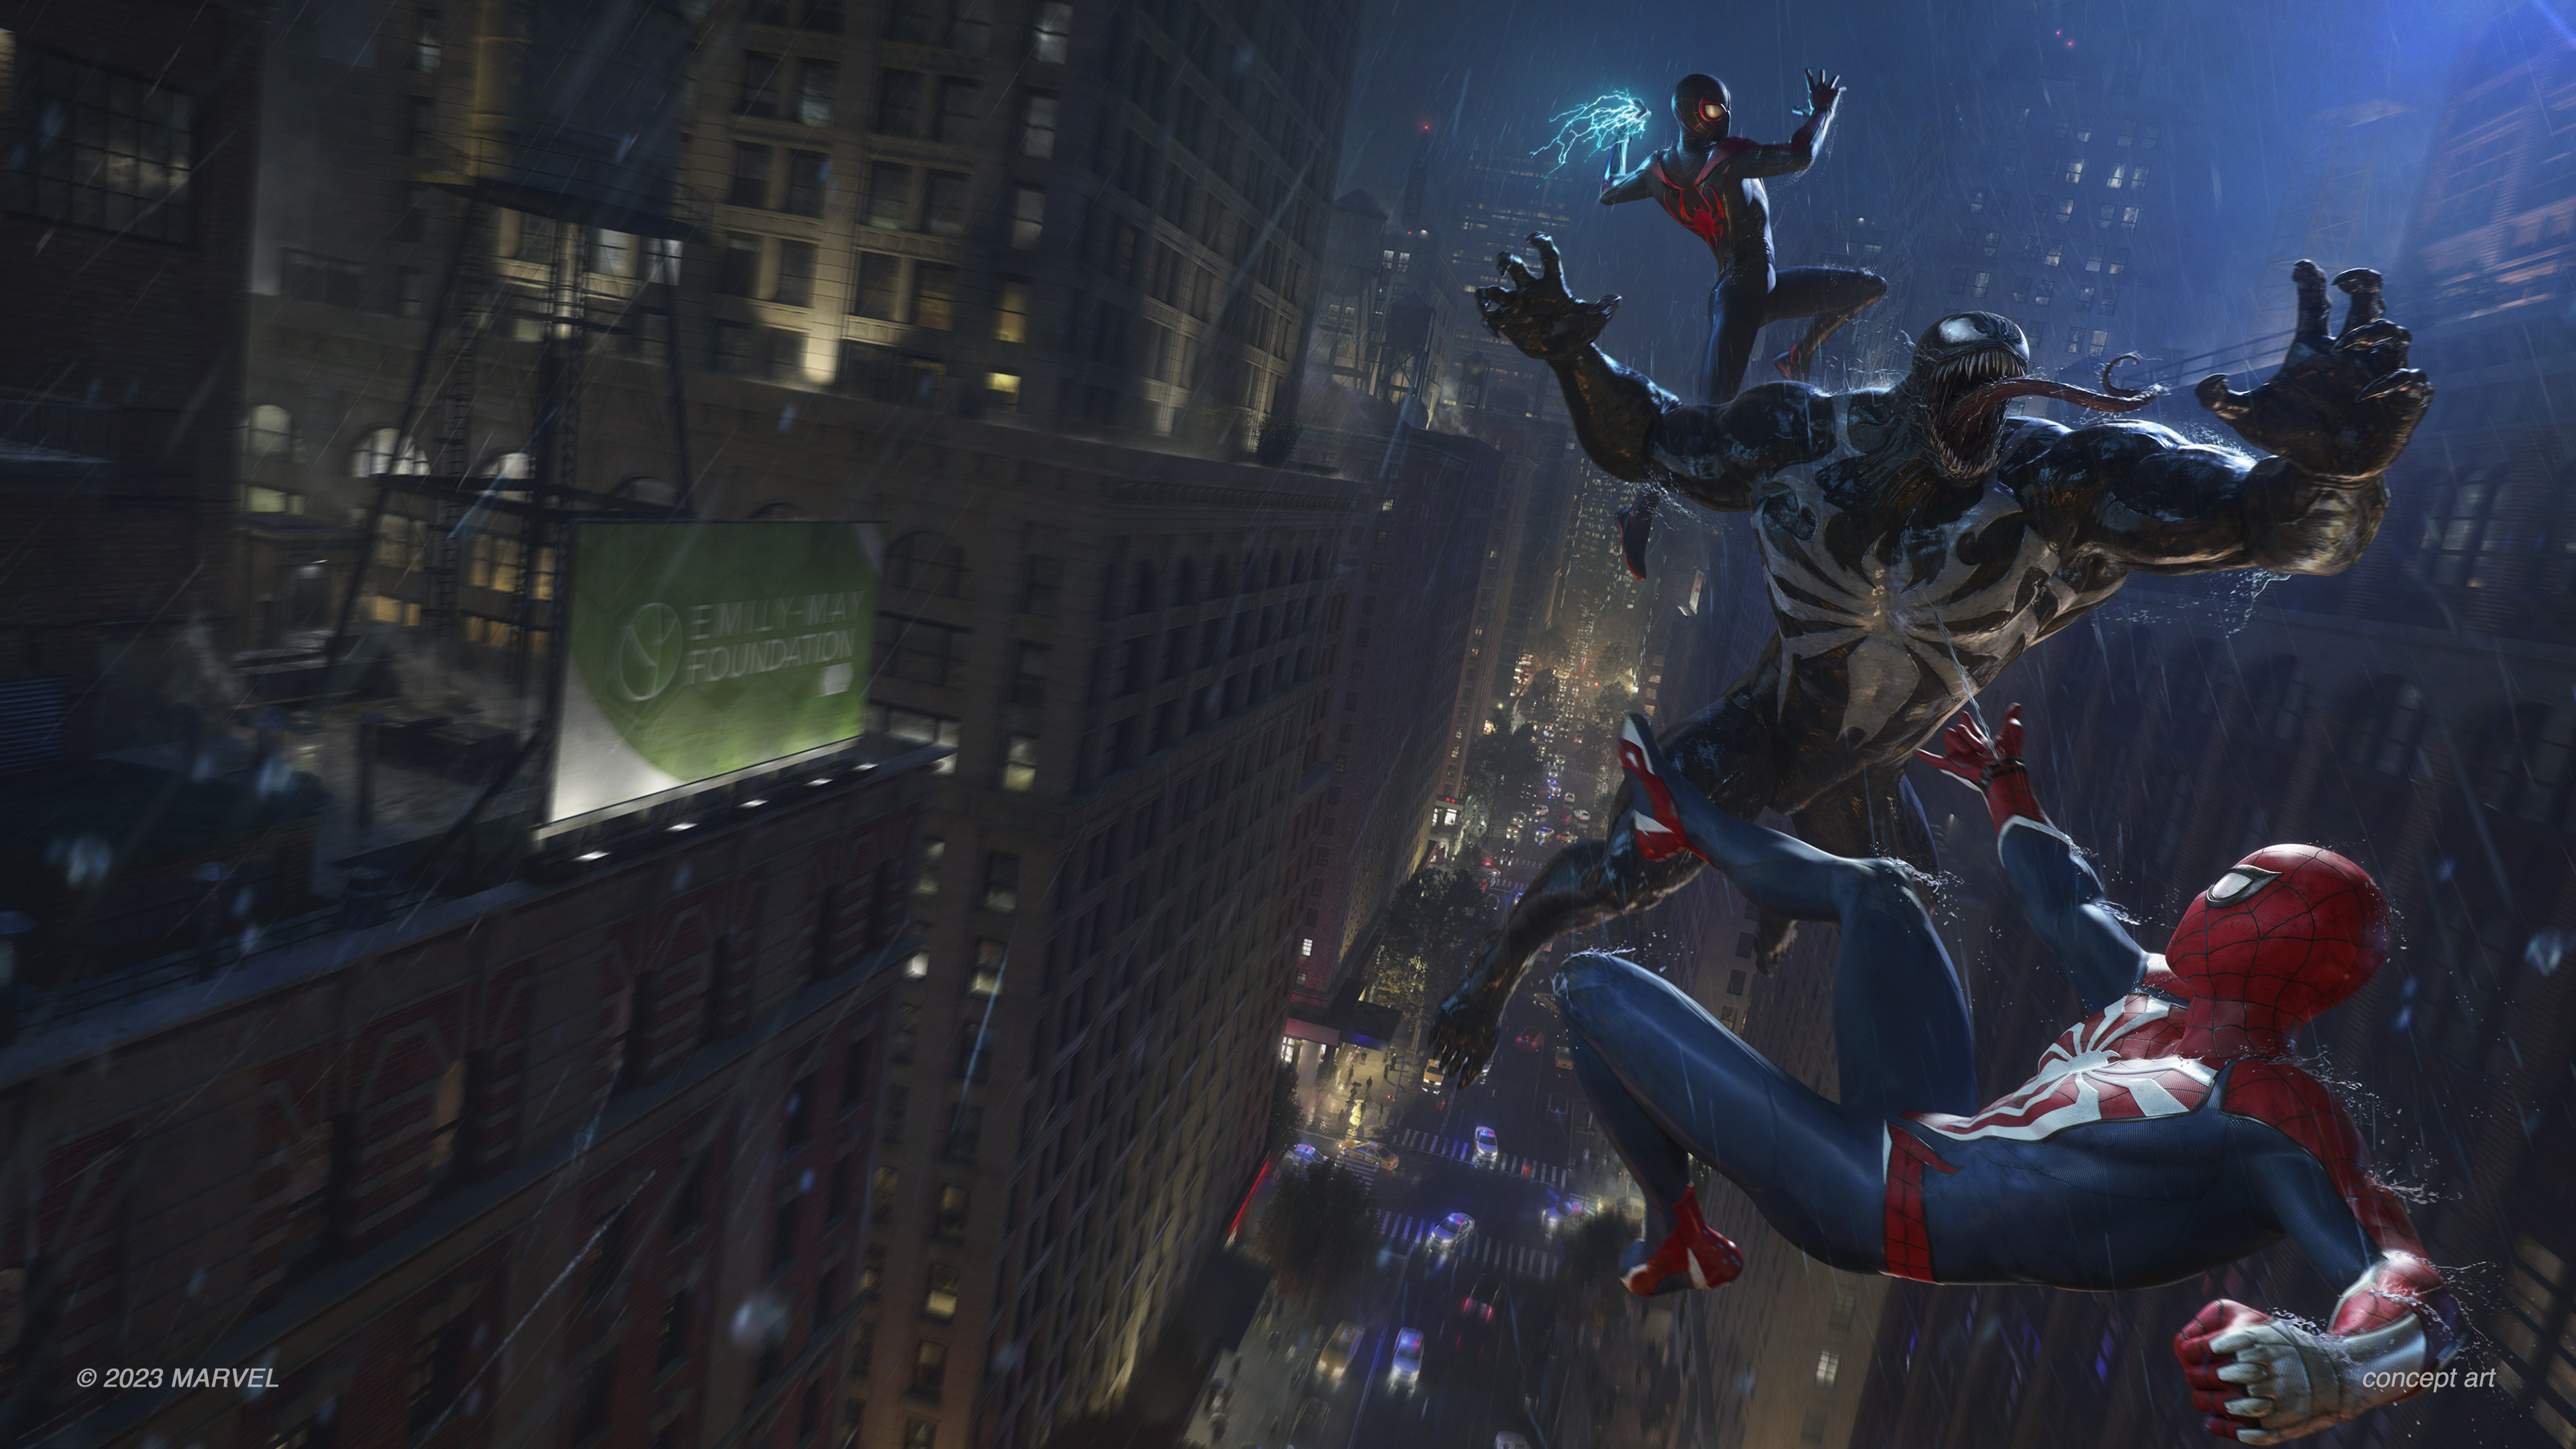 Marvel's Spider-Man 2』がPS5®限定で10月20日（金）に発売決定！ 各 ...